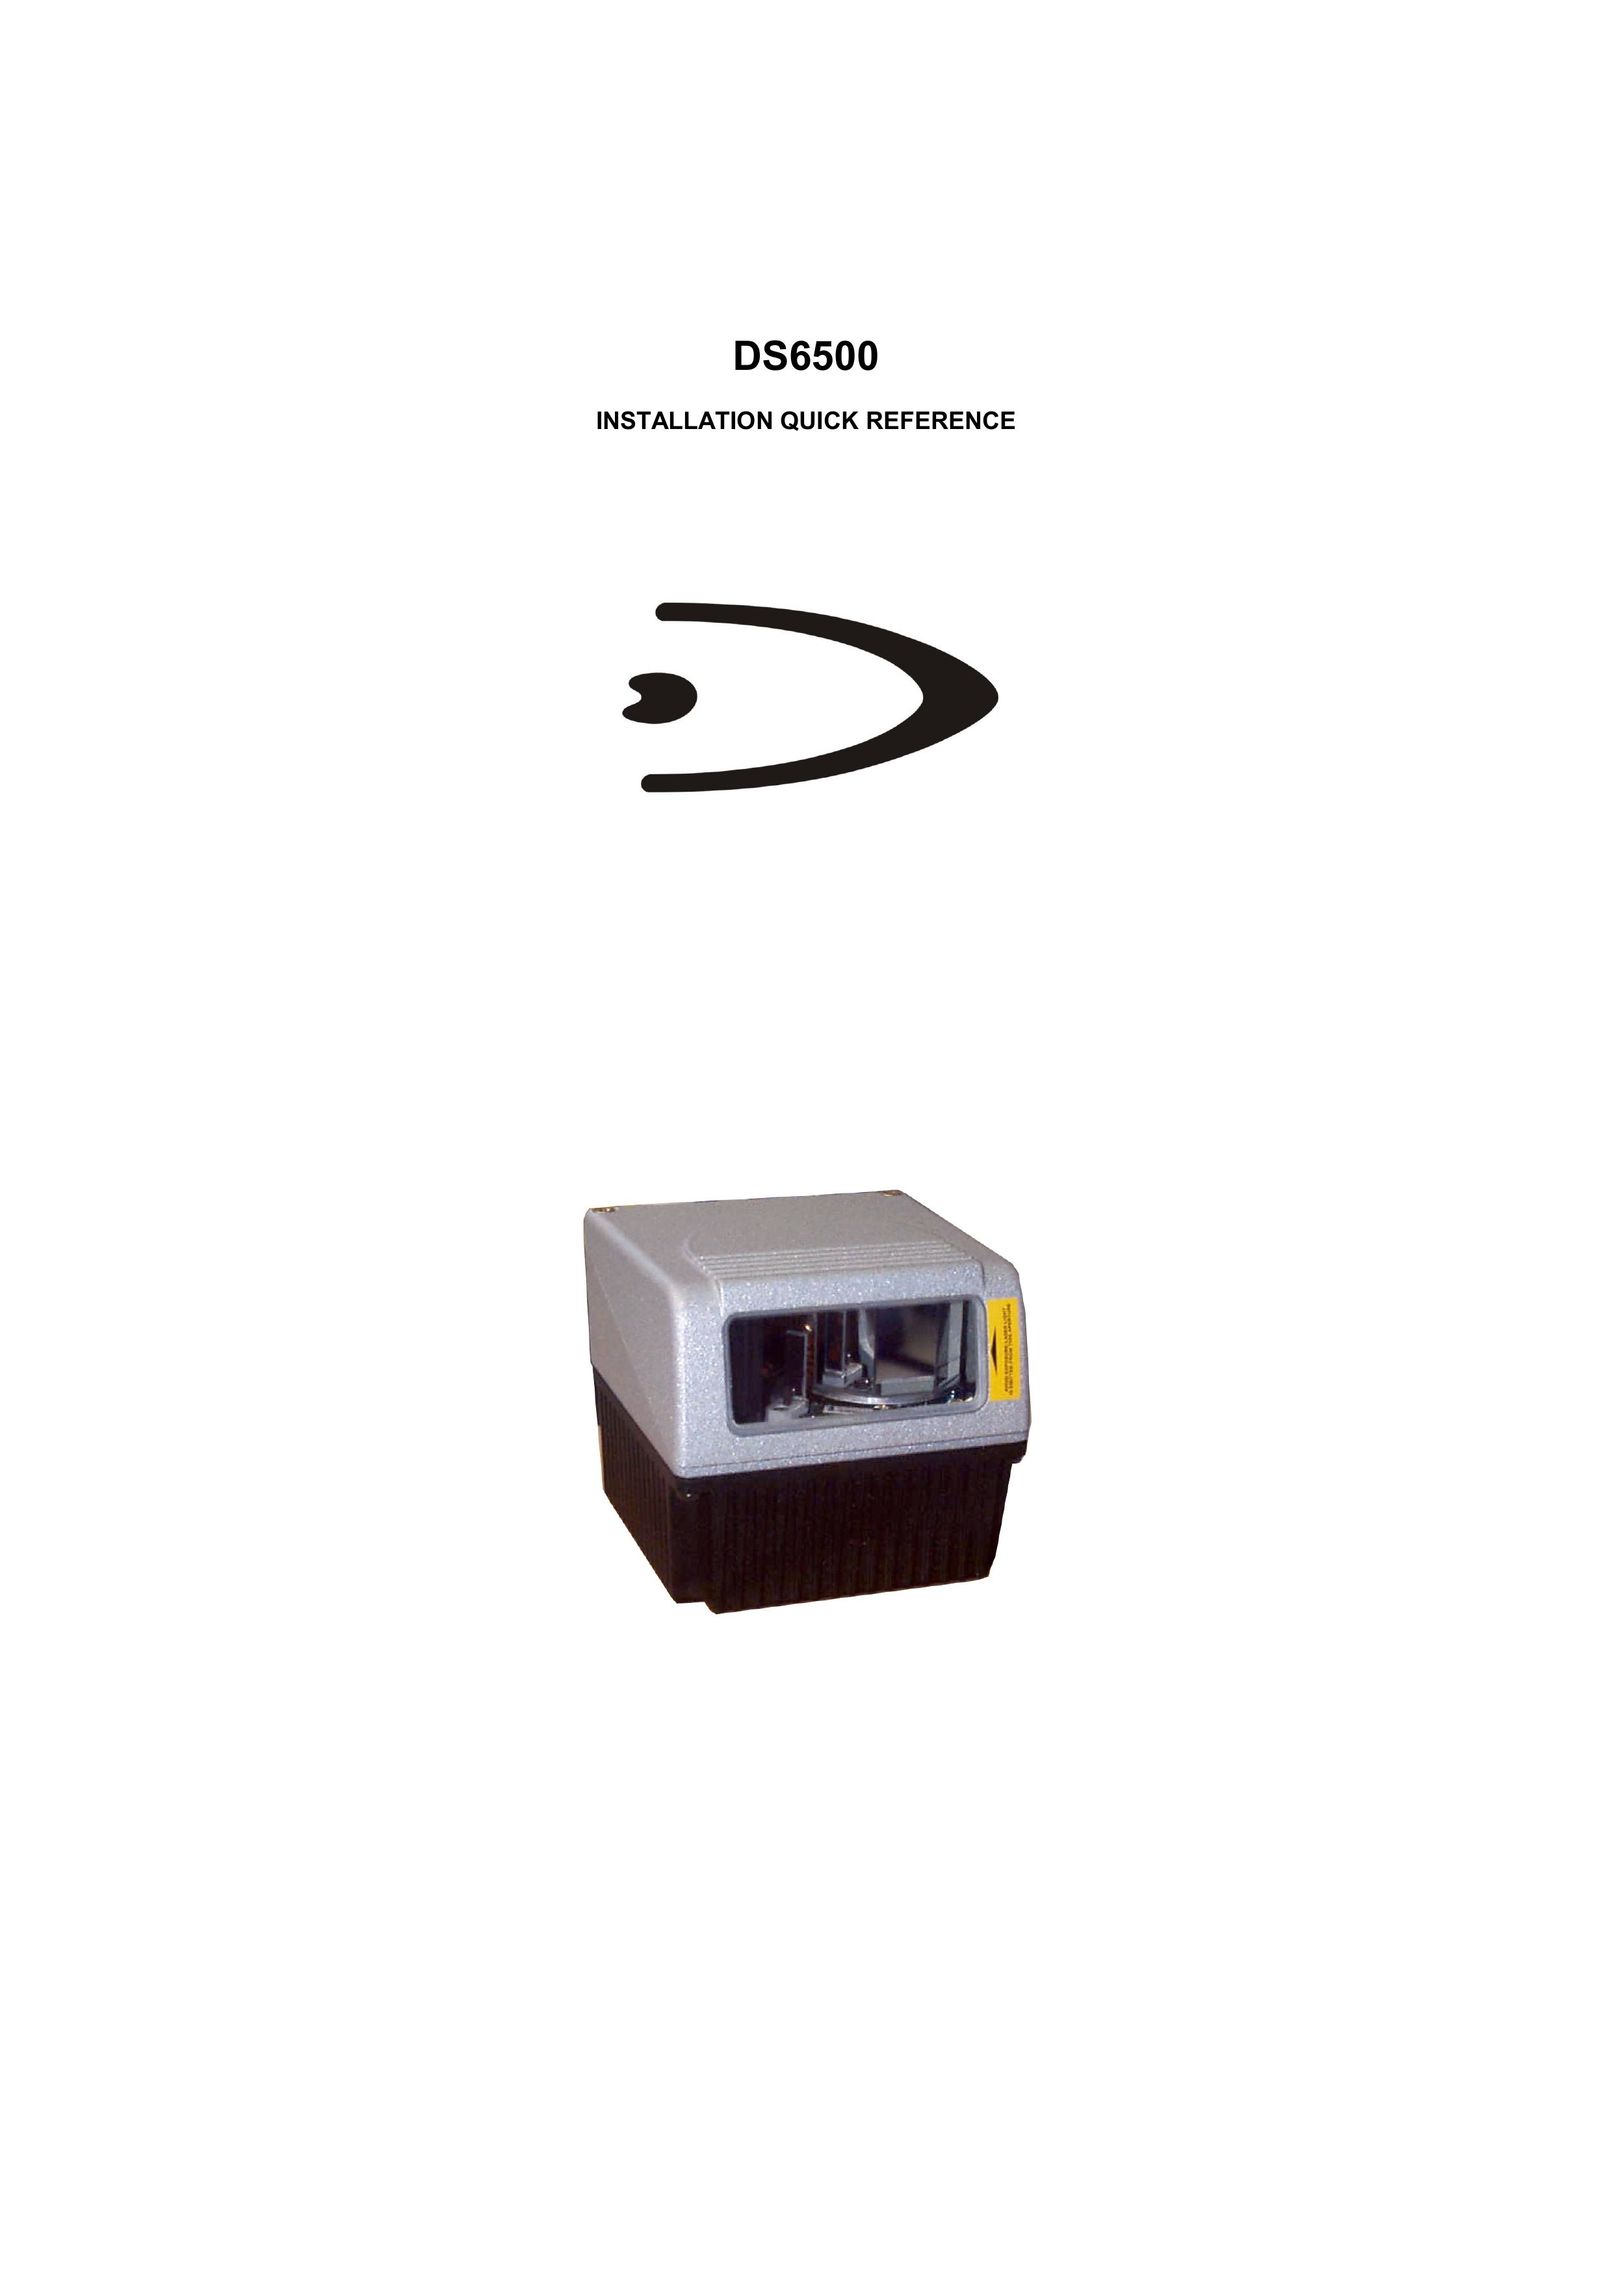 Datalogic Scanning DS6500-100-011 Scanner User Manual